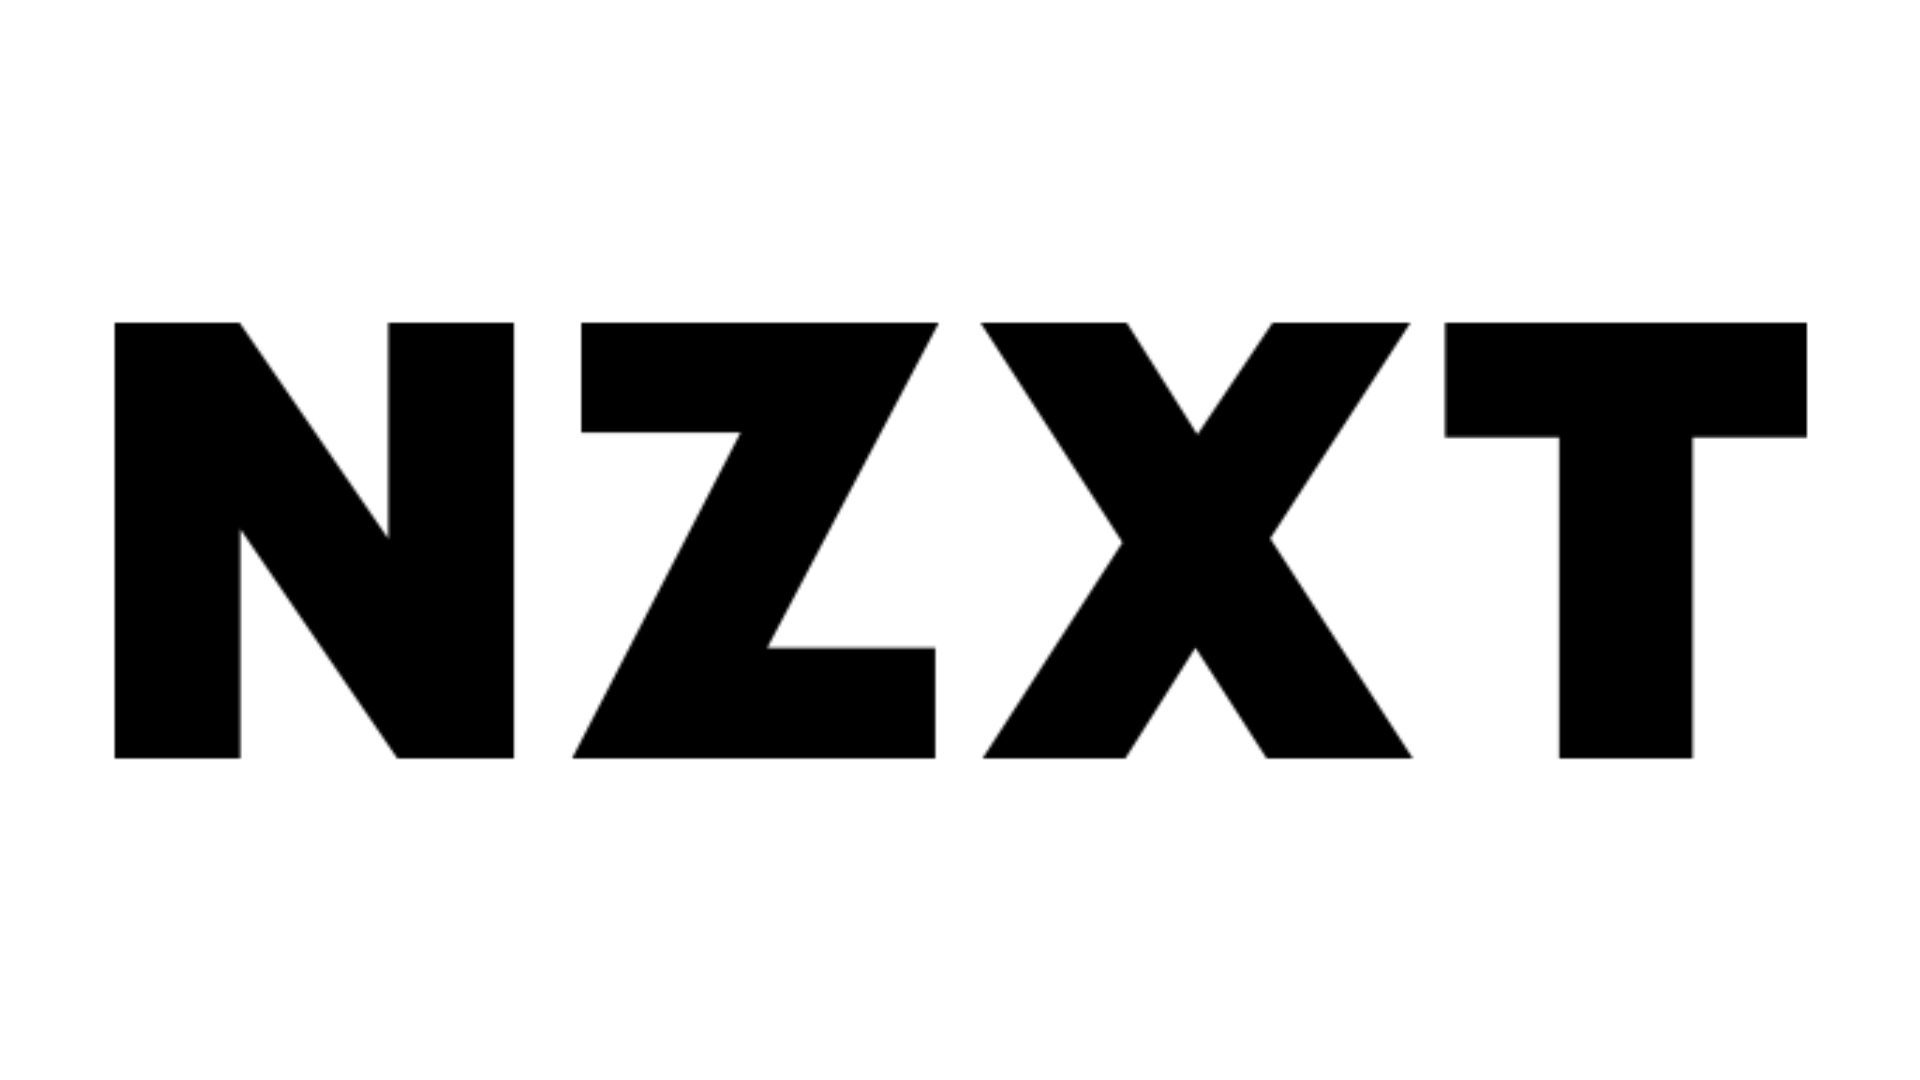 אתרי האינטרנט הטובים ביותר לבניית מחשב מותאם אישית, מספר 2: NZXT. הלוגו הוא על רקע שחור